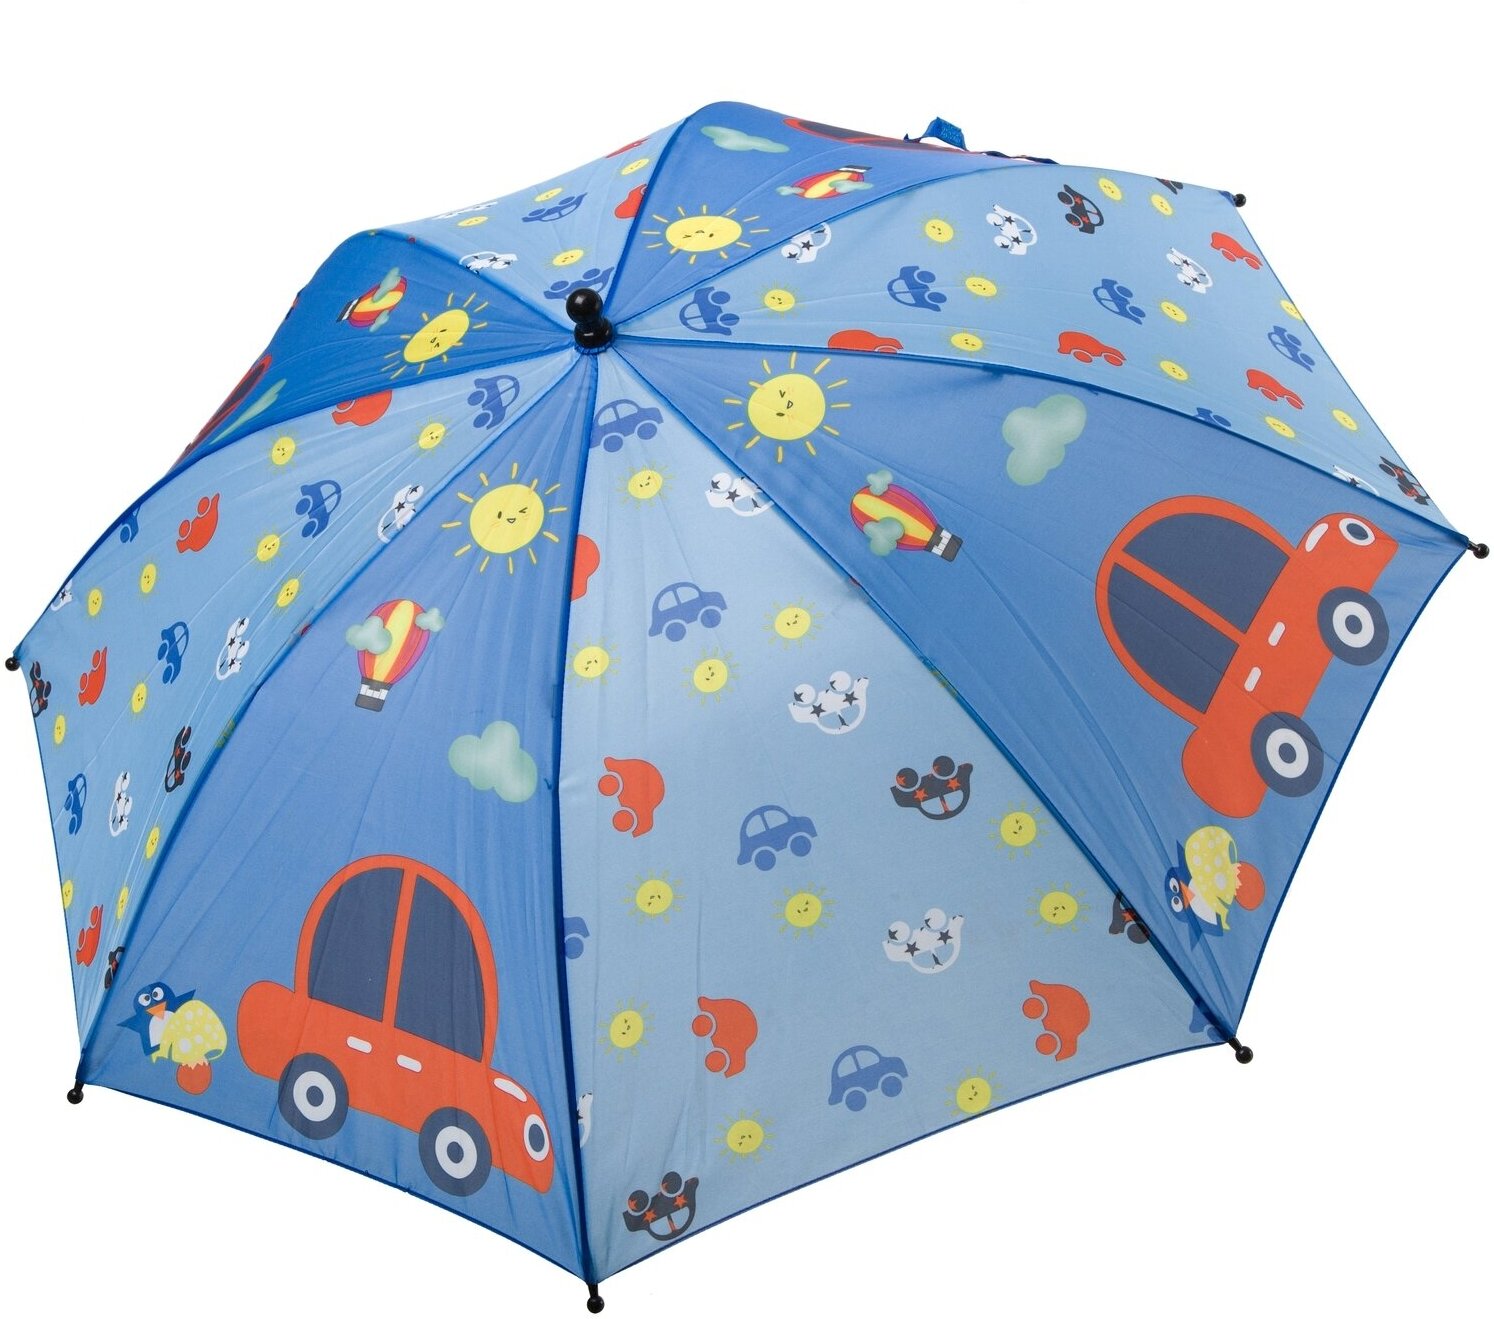 Зонт BONDIBON,авто,полиэстер,диам19', голубой с машинками